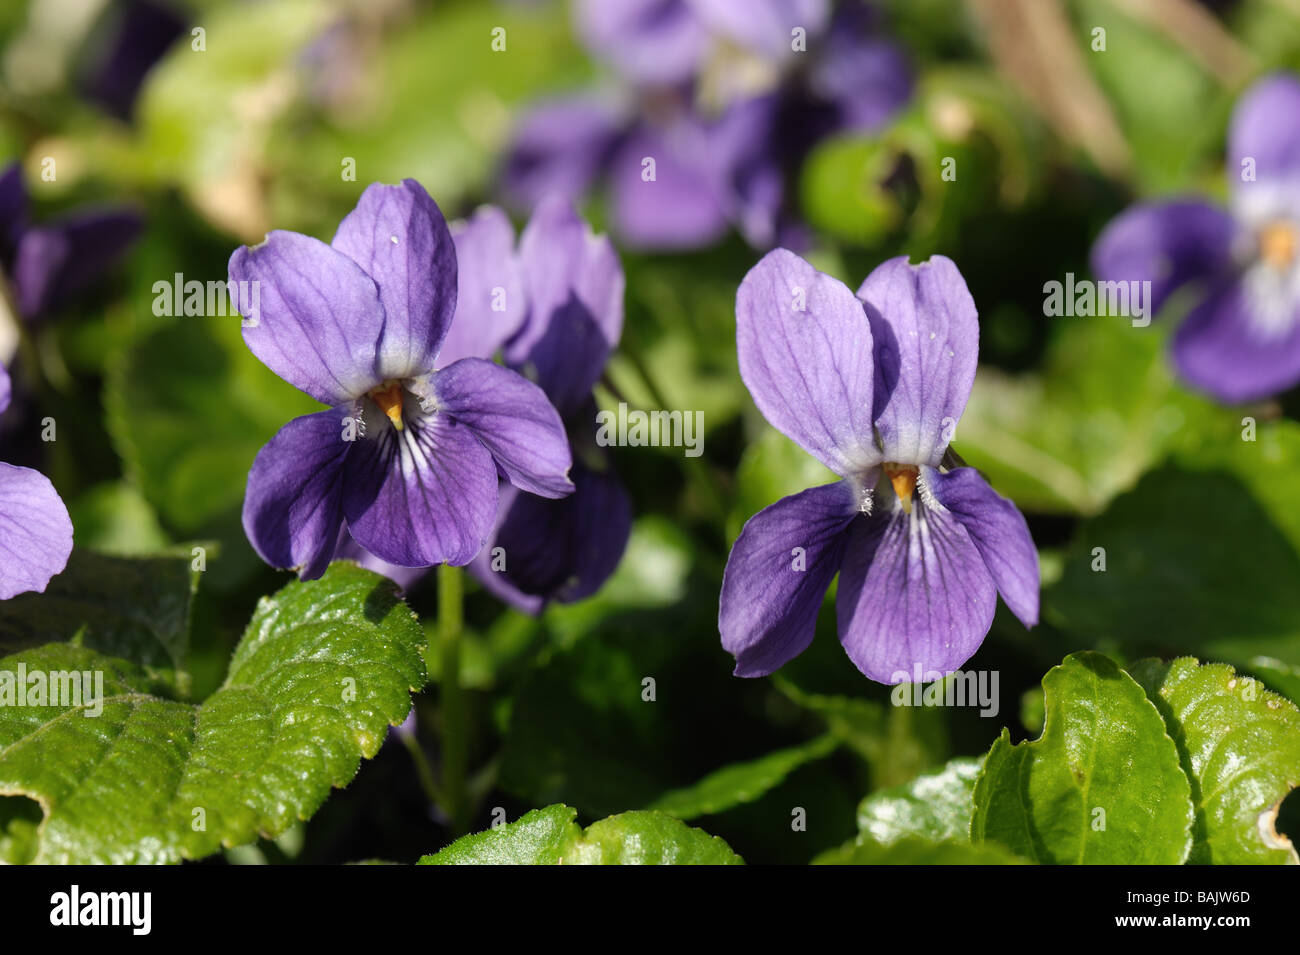 Cane comune Viola Viola riviniana fioritura delle piante Foto Stock